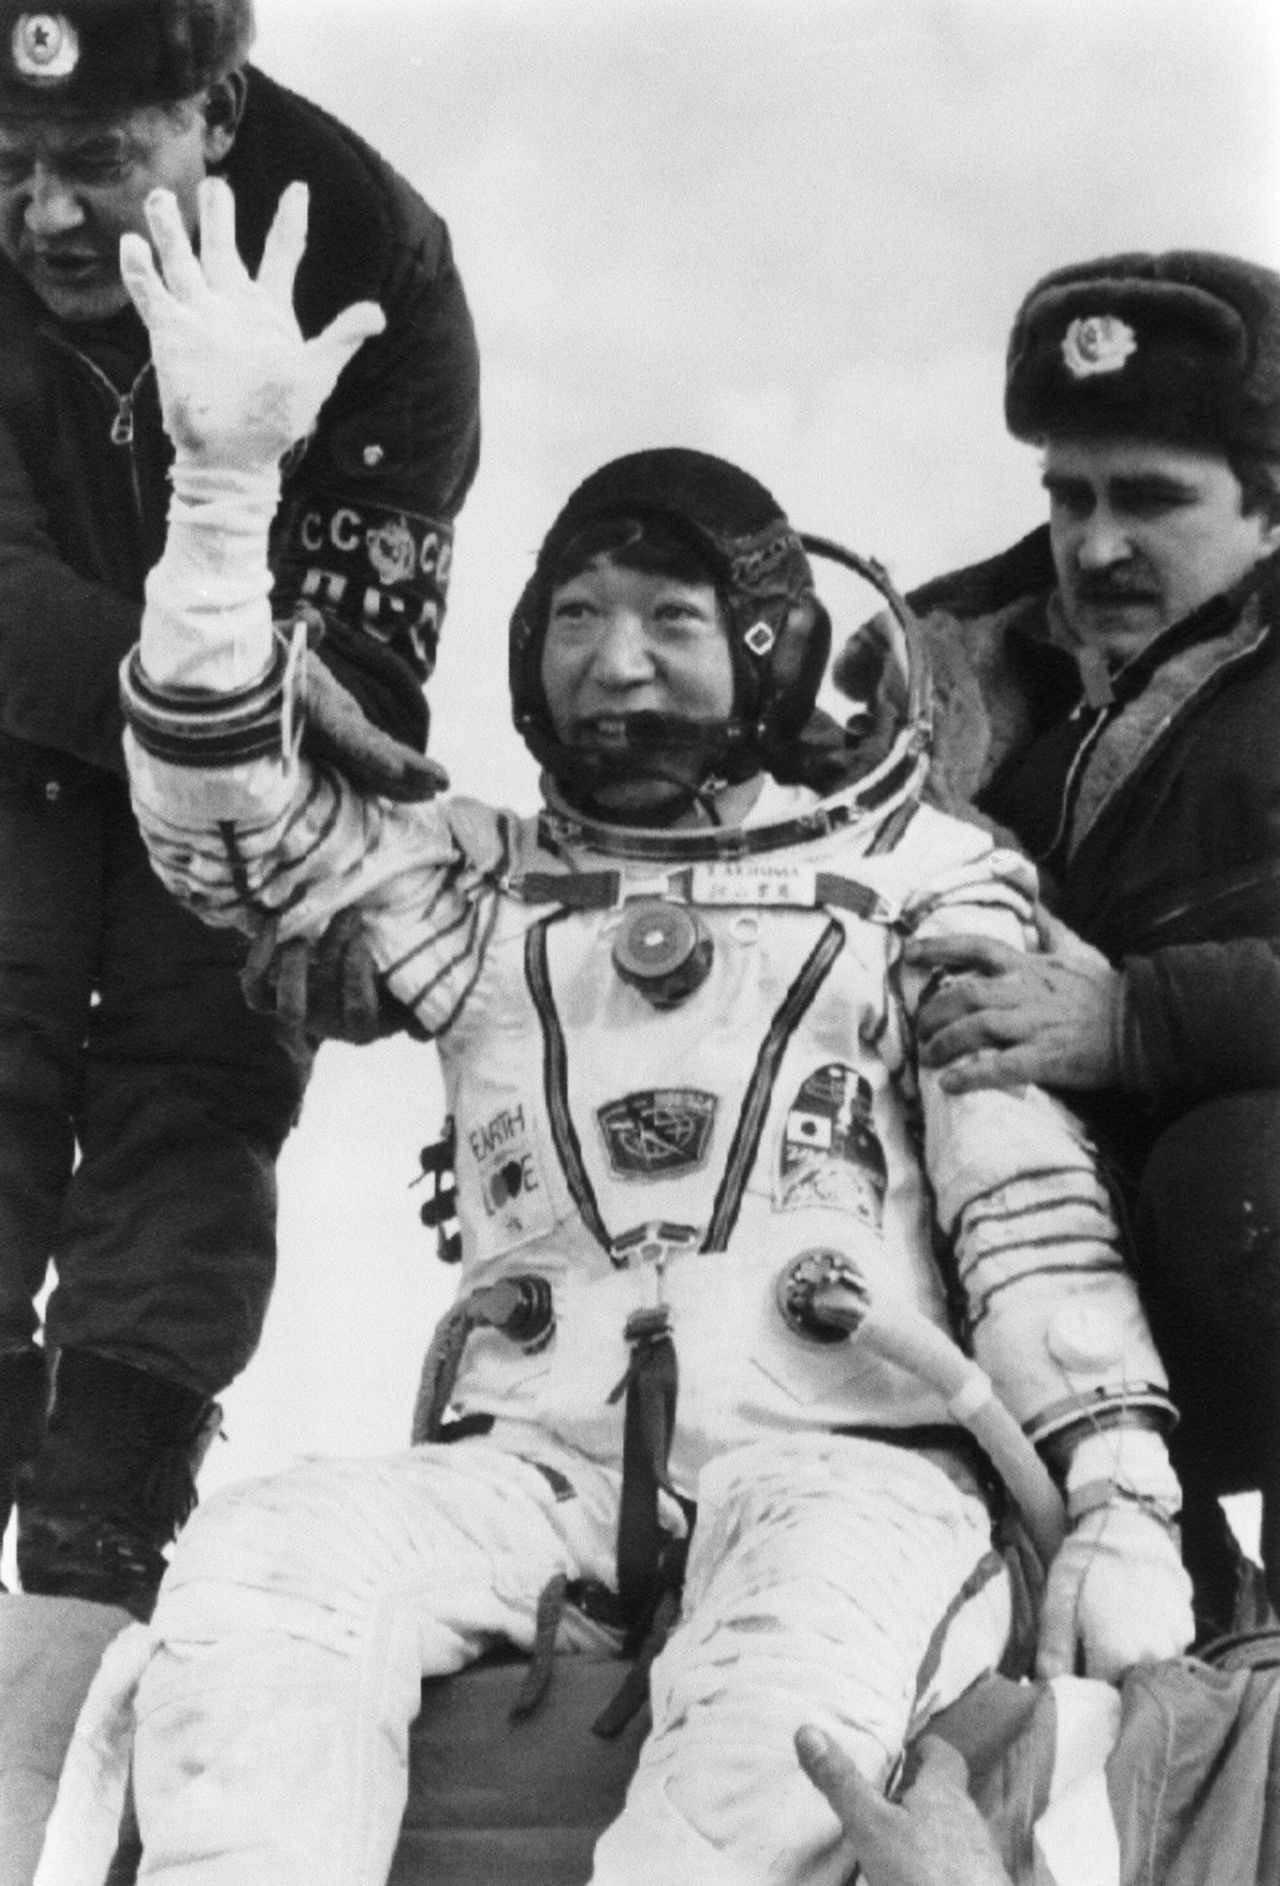 Akiyama Toyohiro, reporter pour TBS, salue et sourit après son retour sur terre sain et sauf à proximité d'Arkalyk, en Union soviétique (aujourd'hui Kazakhstan). (Jiji; photo mise en commun)